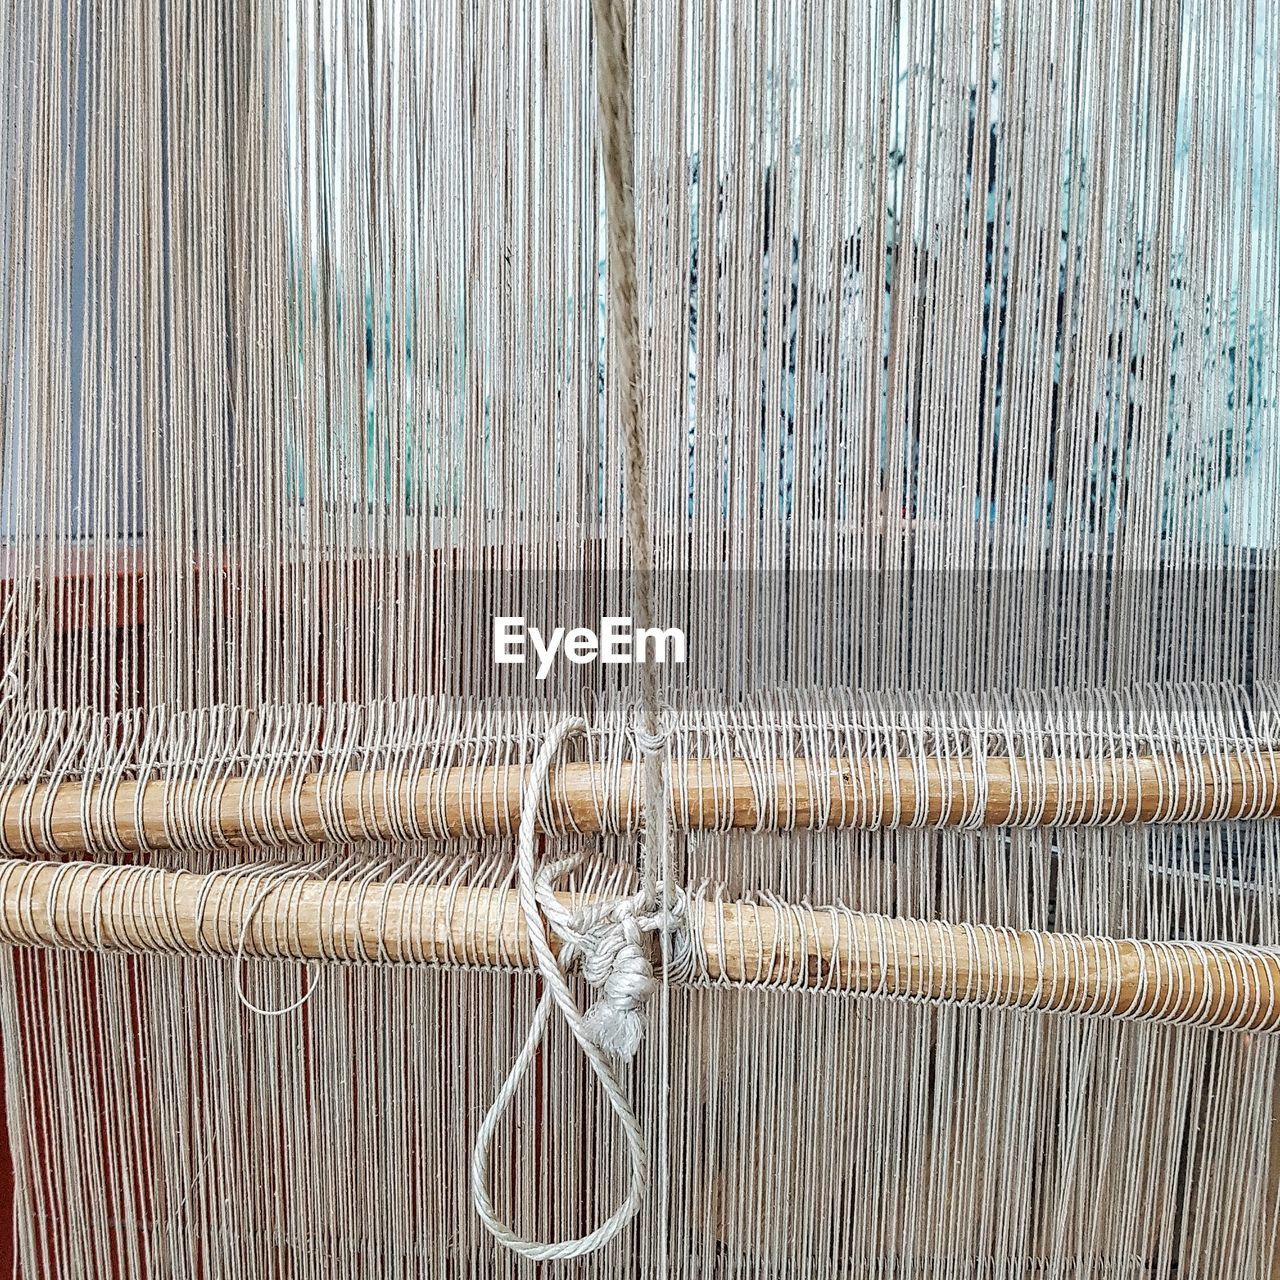 Full frame shot of loom